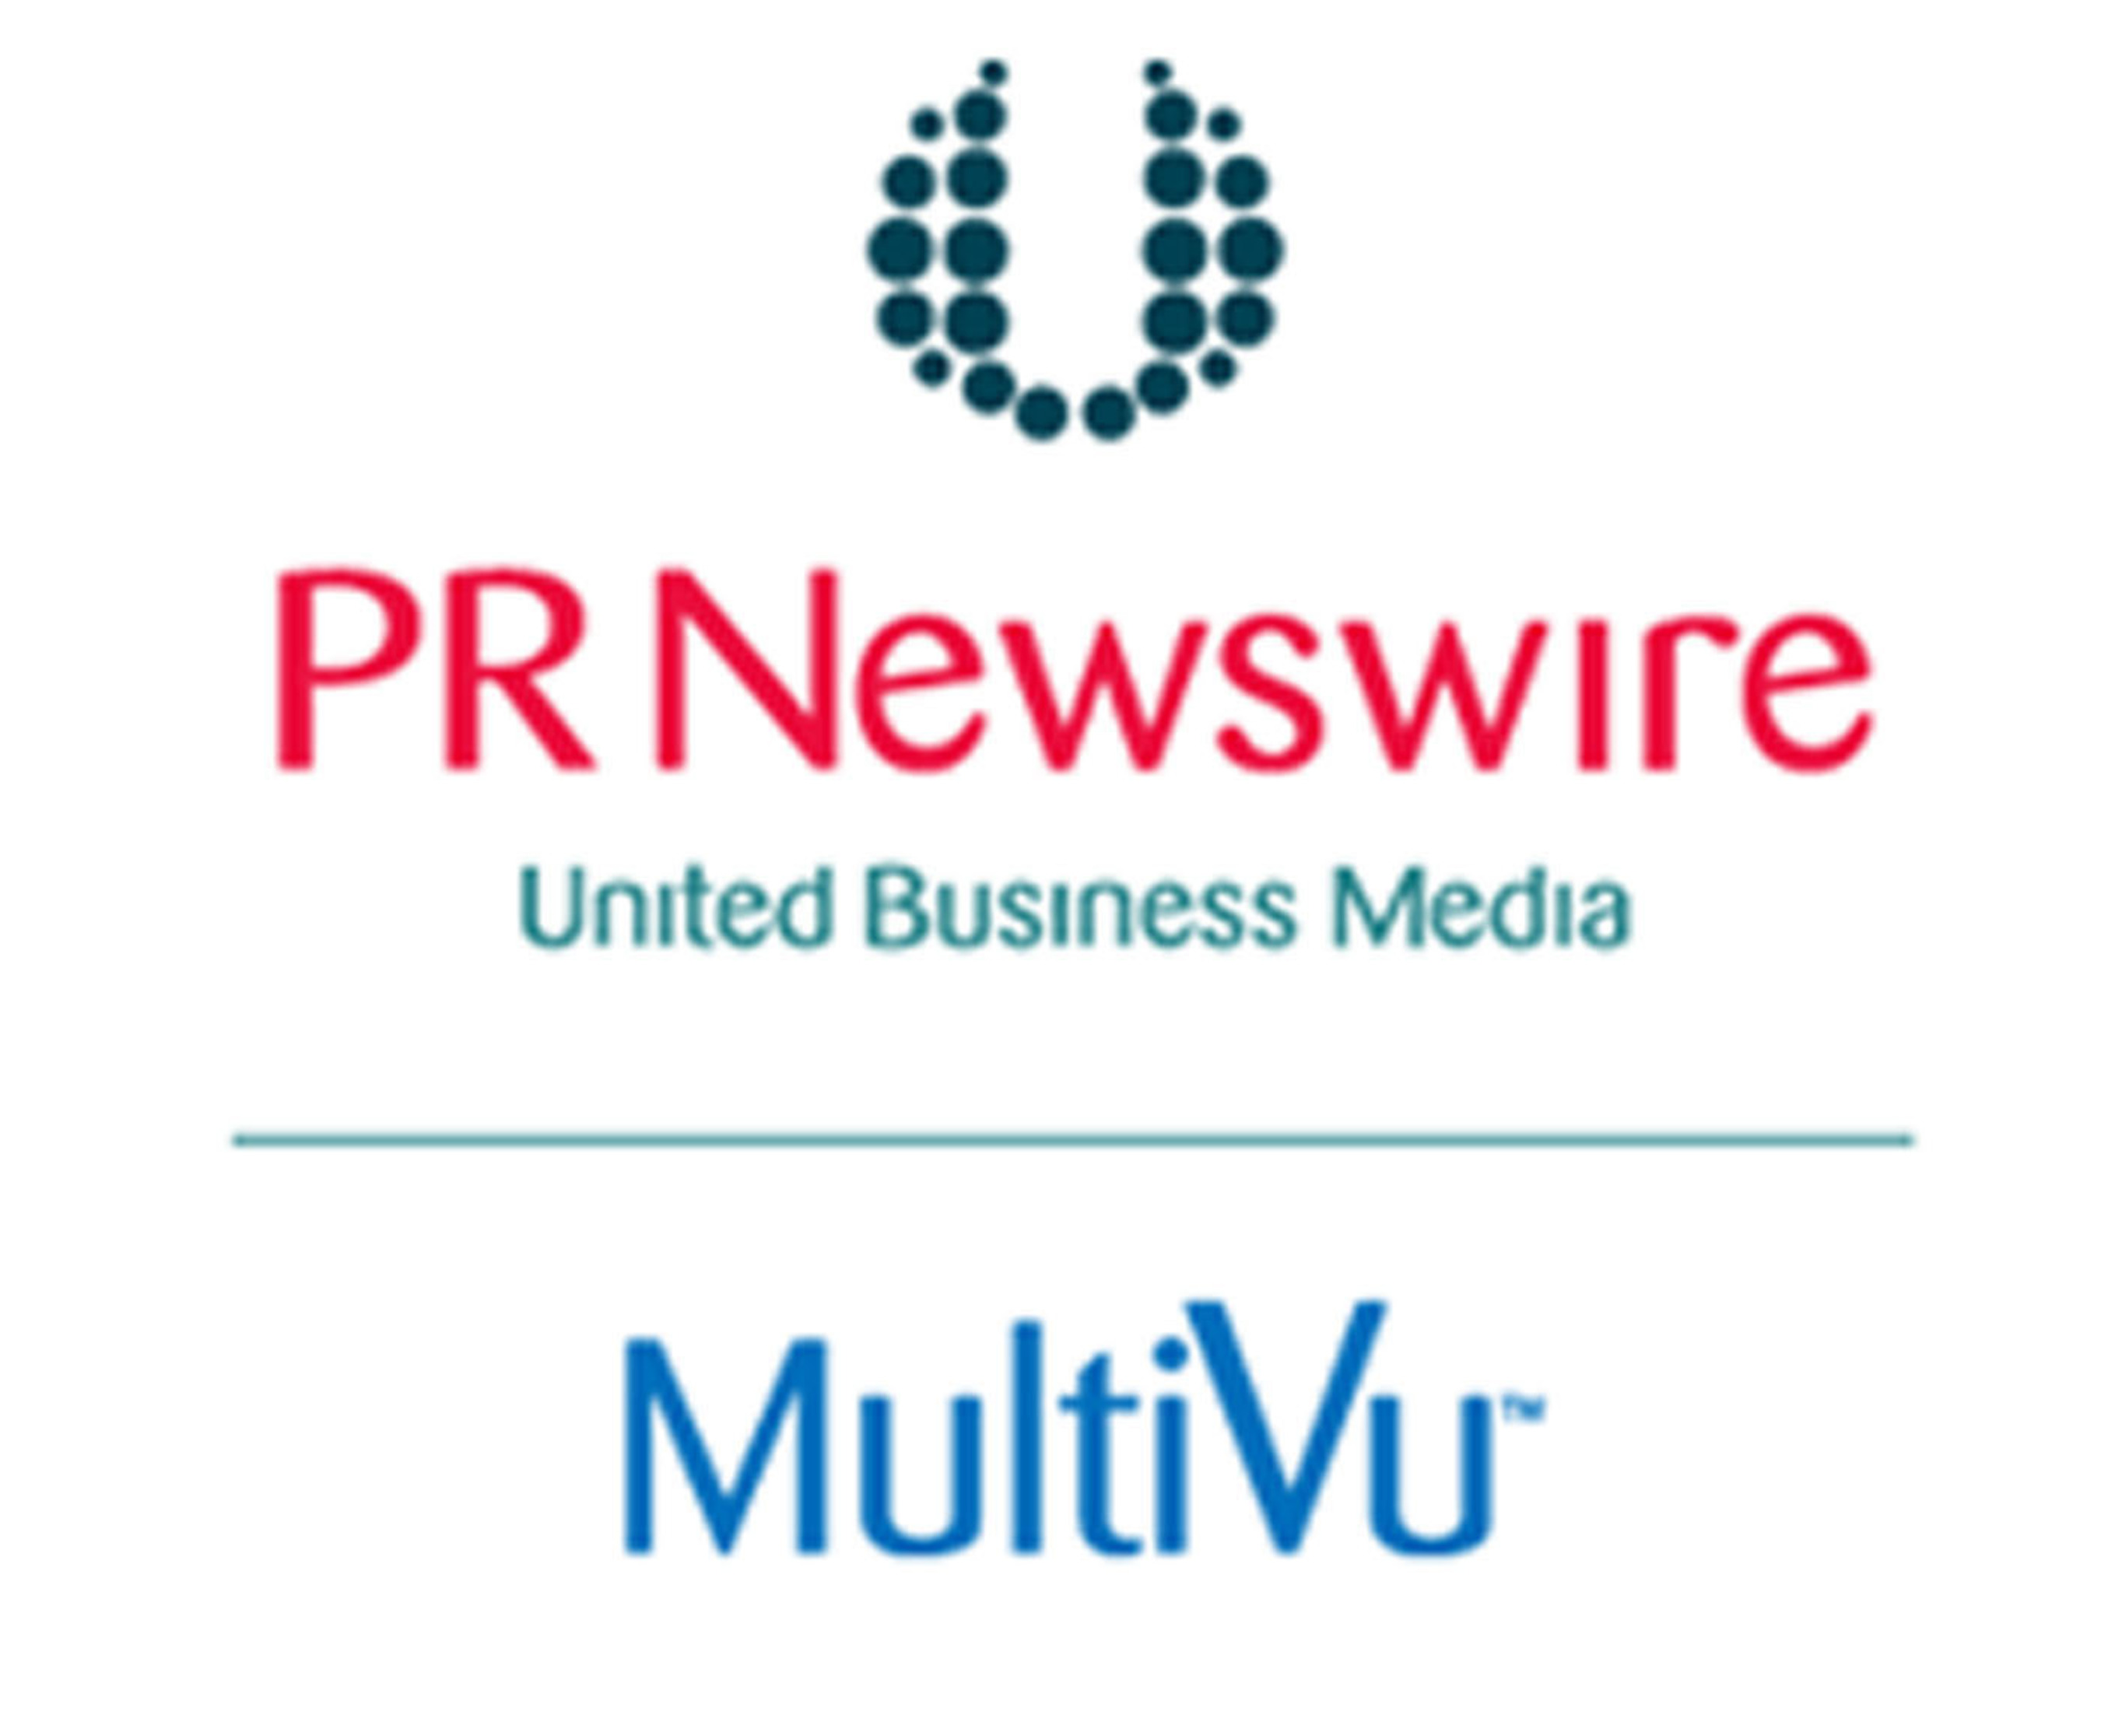 PR Newswire MultiVu logo. (PRNewsFoto/PR Newswire Association LLC) (PRNewsFoto/)